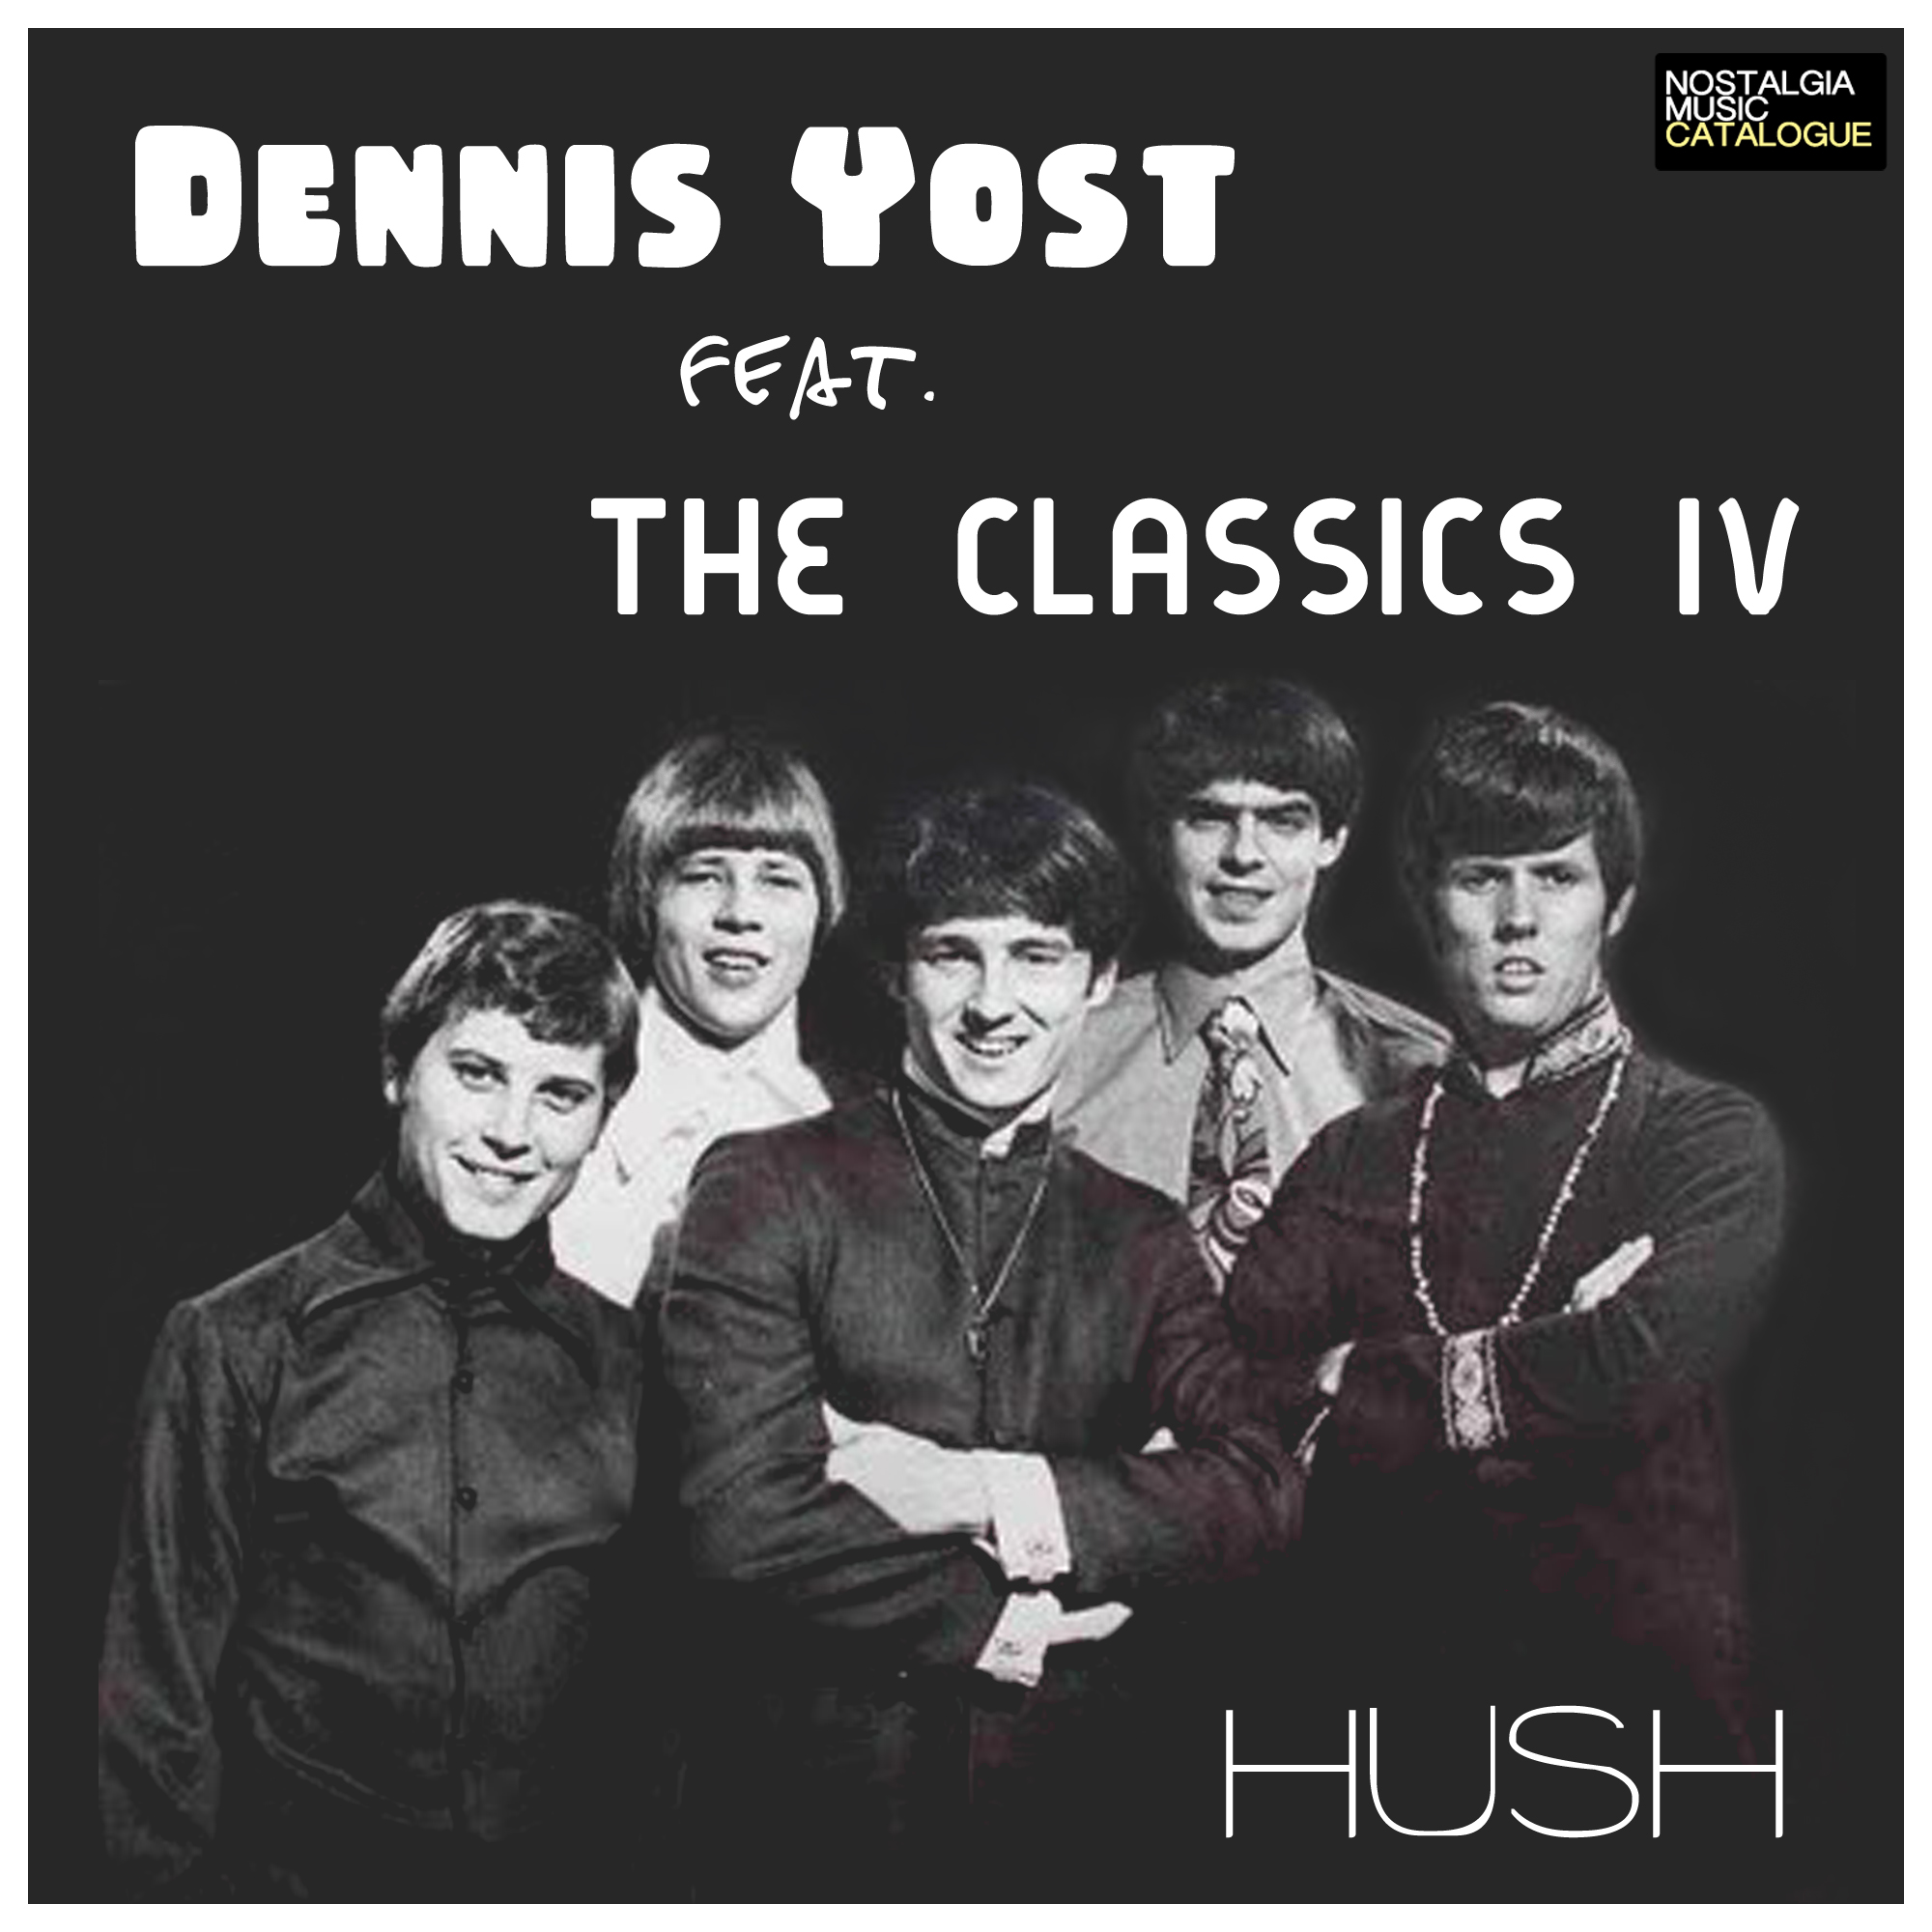 Dennis Yost & The Classics IV - Hush - Nostalgia Music Catalogue2000 x 2000